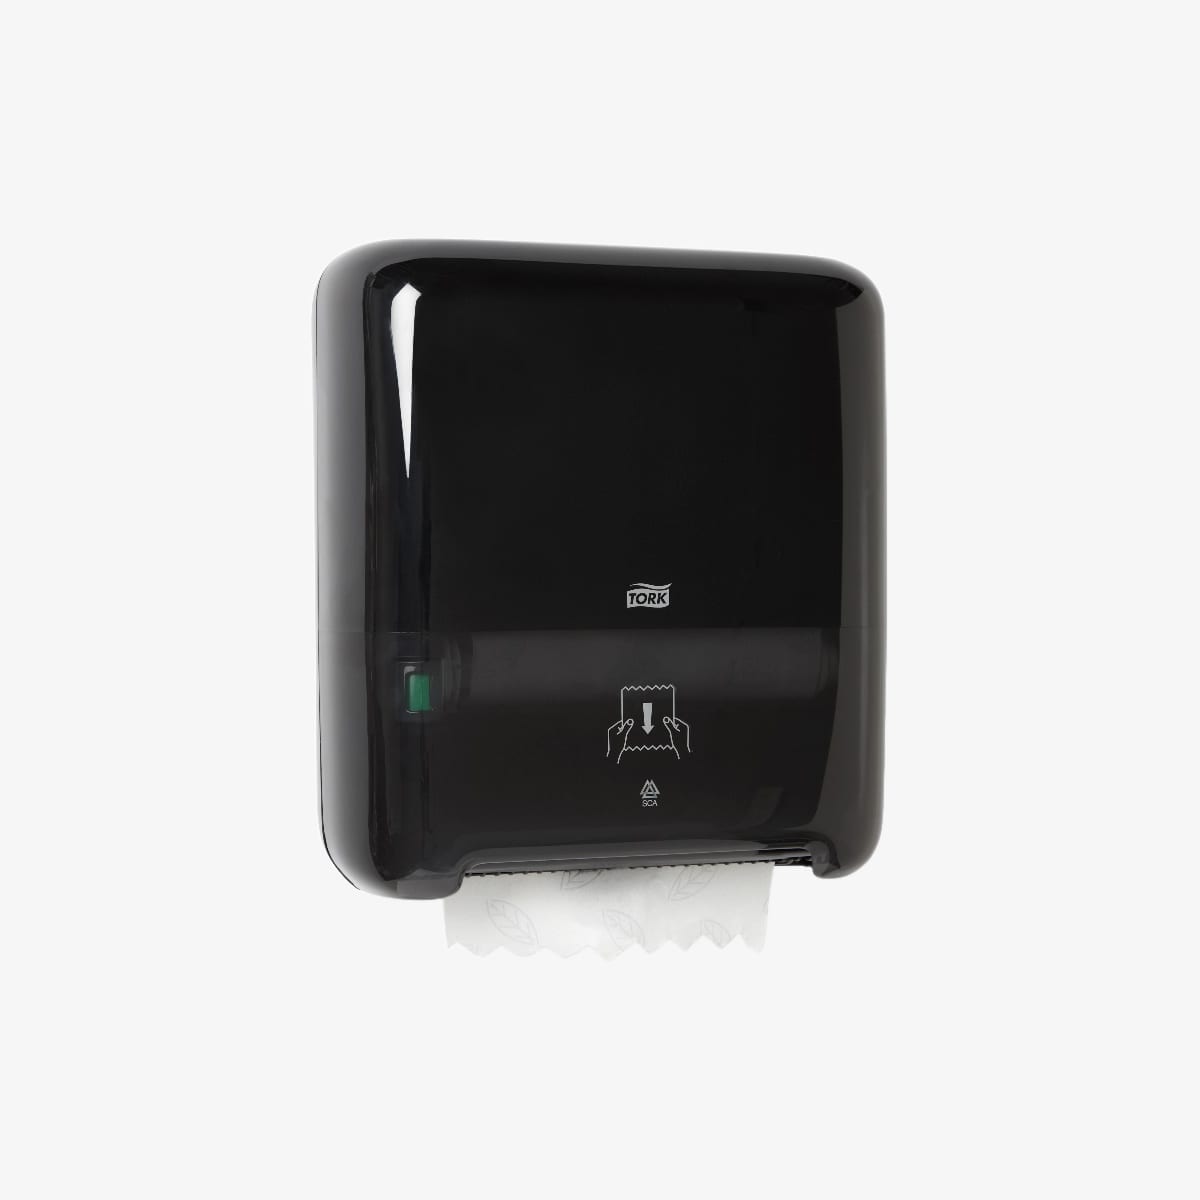  бумажных полотенец Tork Система H1 (черный цвет) – ENC